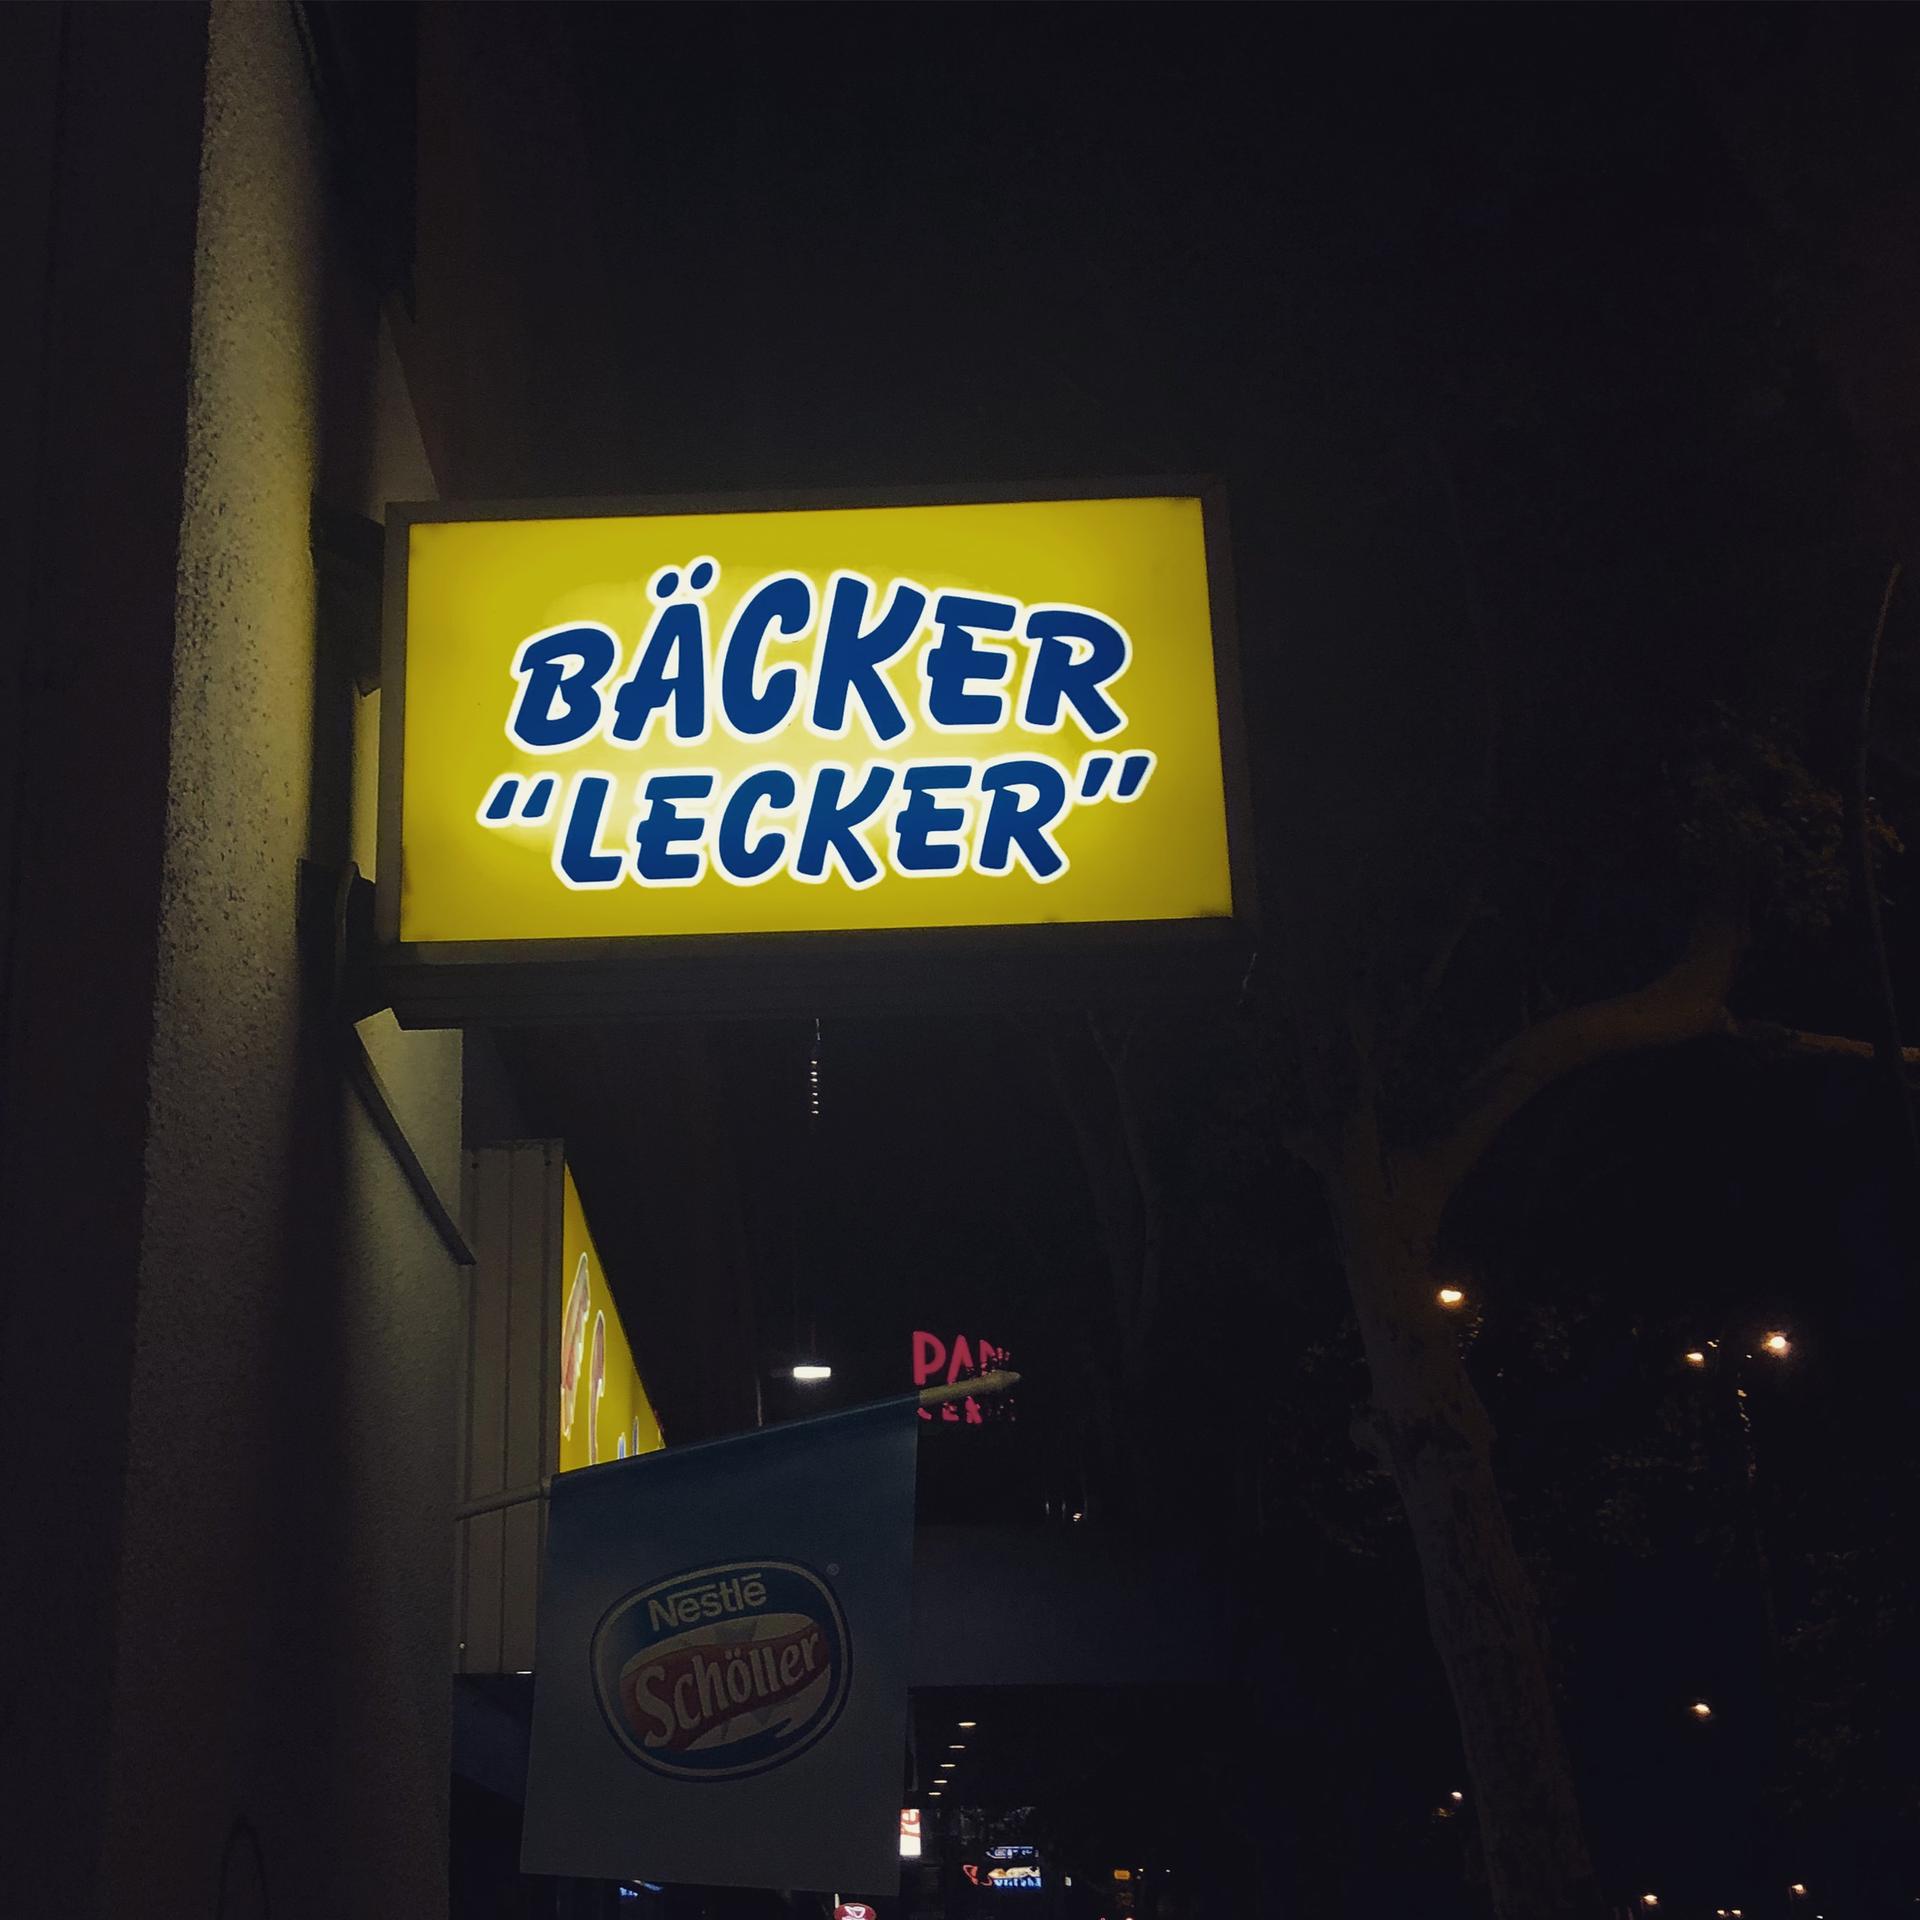 Das Schild einer Bäckerei mit dem Schild "Bäcker 'Lecker'". 